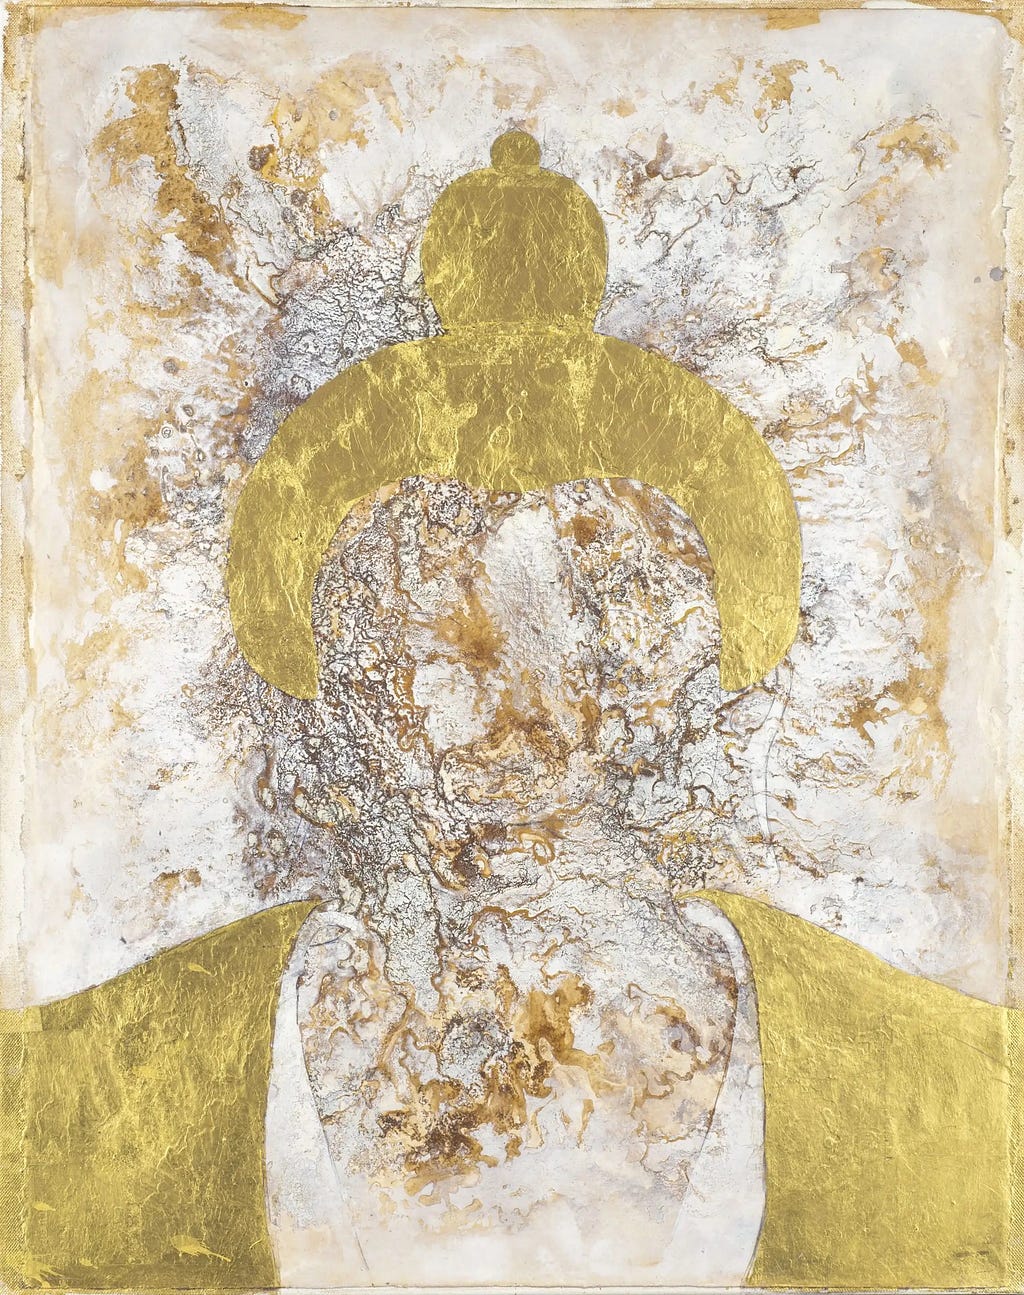 Golden Buddha by Sax Berlin